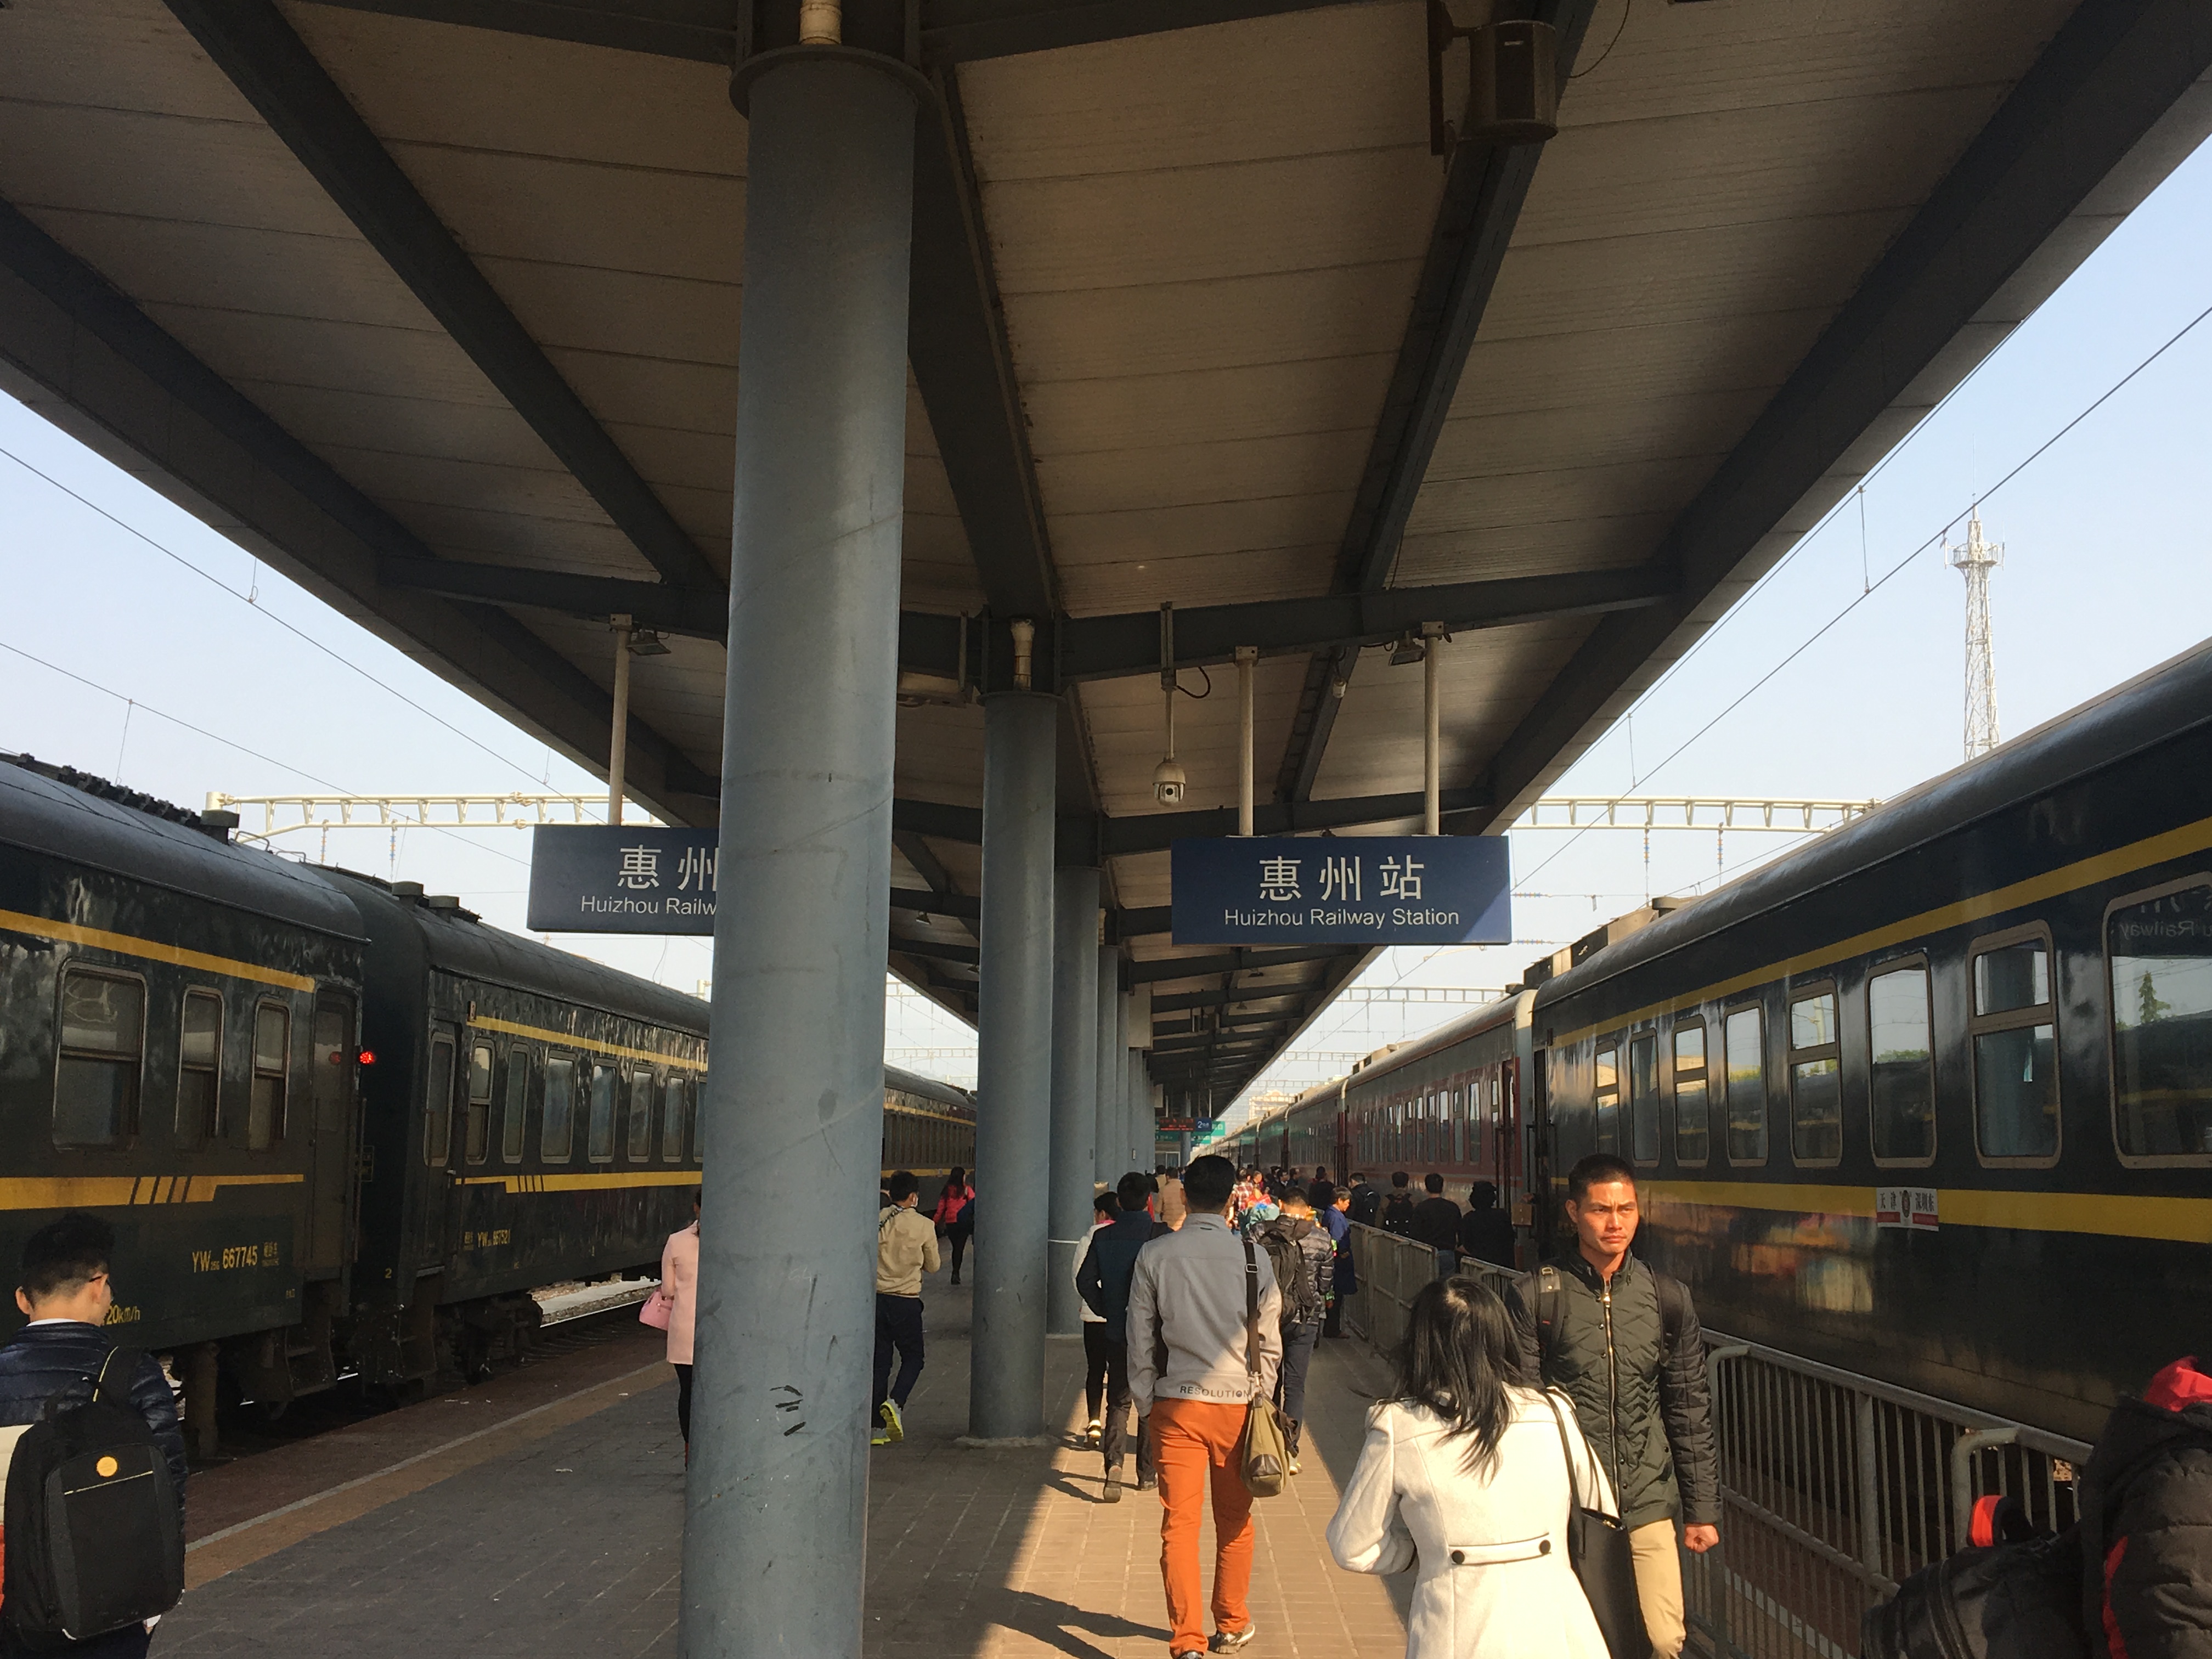 惠州火车站旅游图片,惠州火车站自助游图片,惠州火车站旅游景点照片